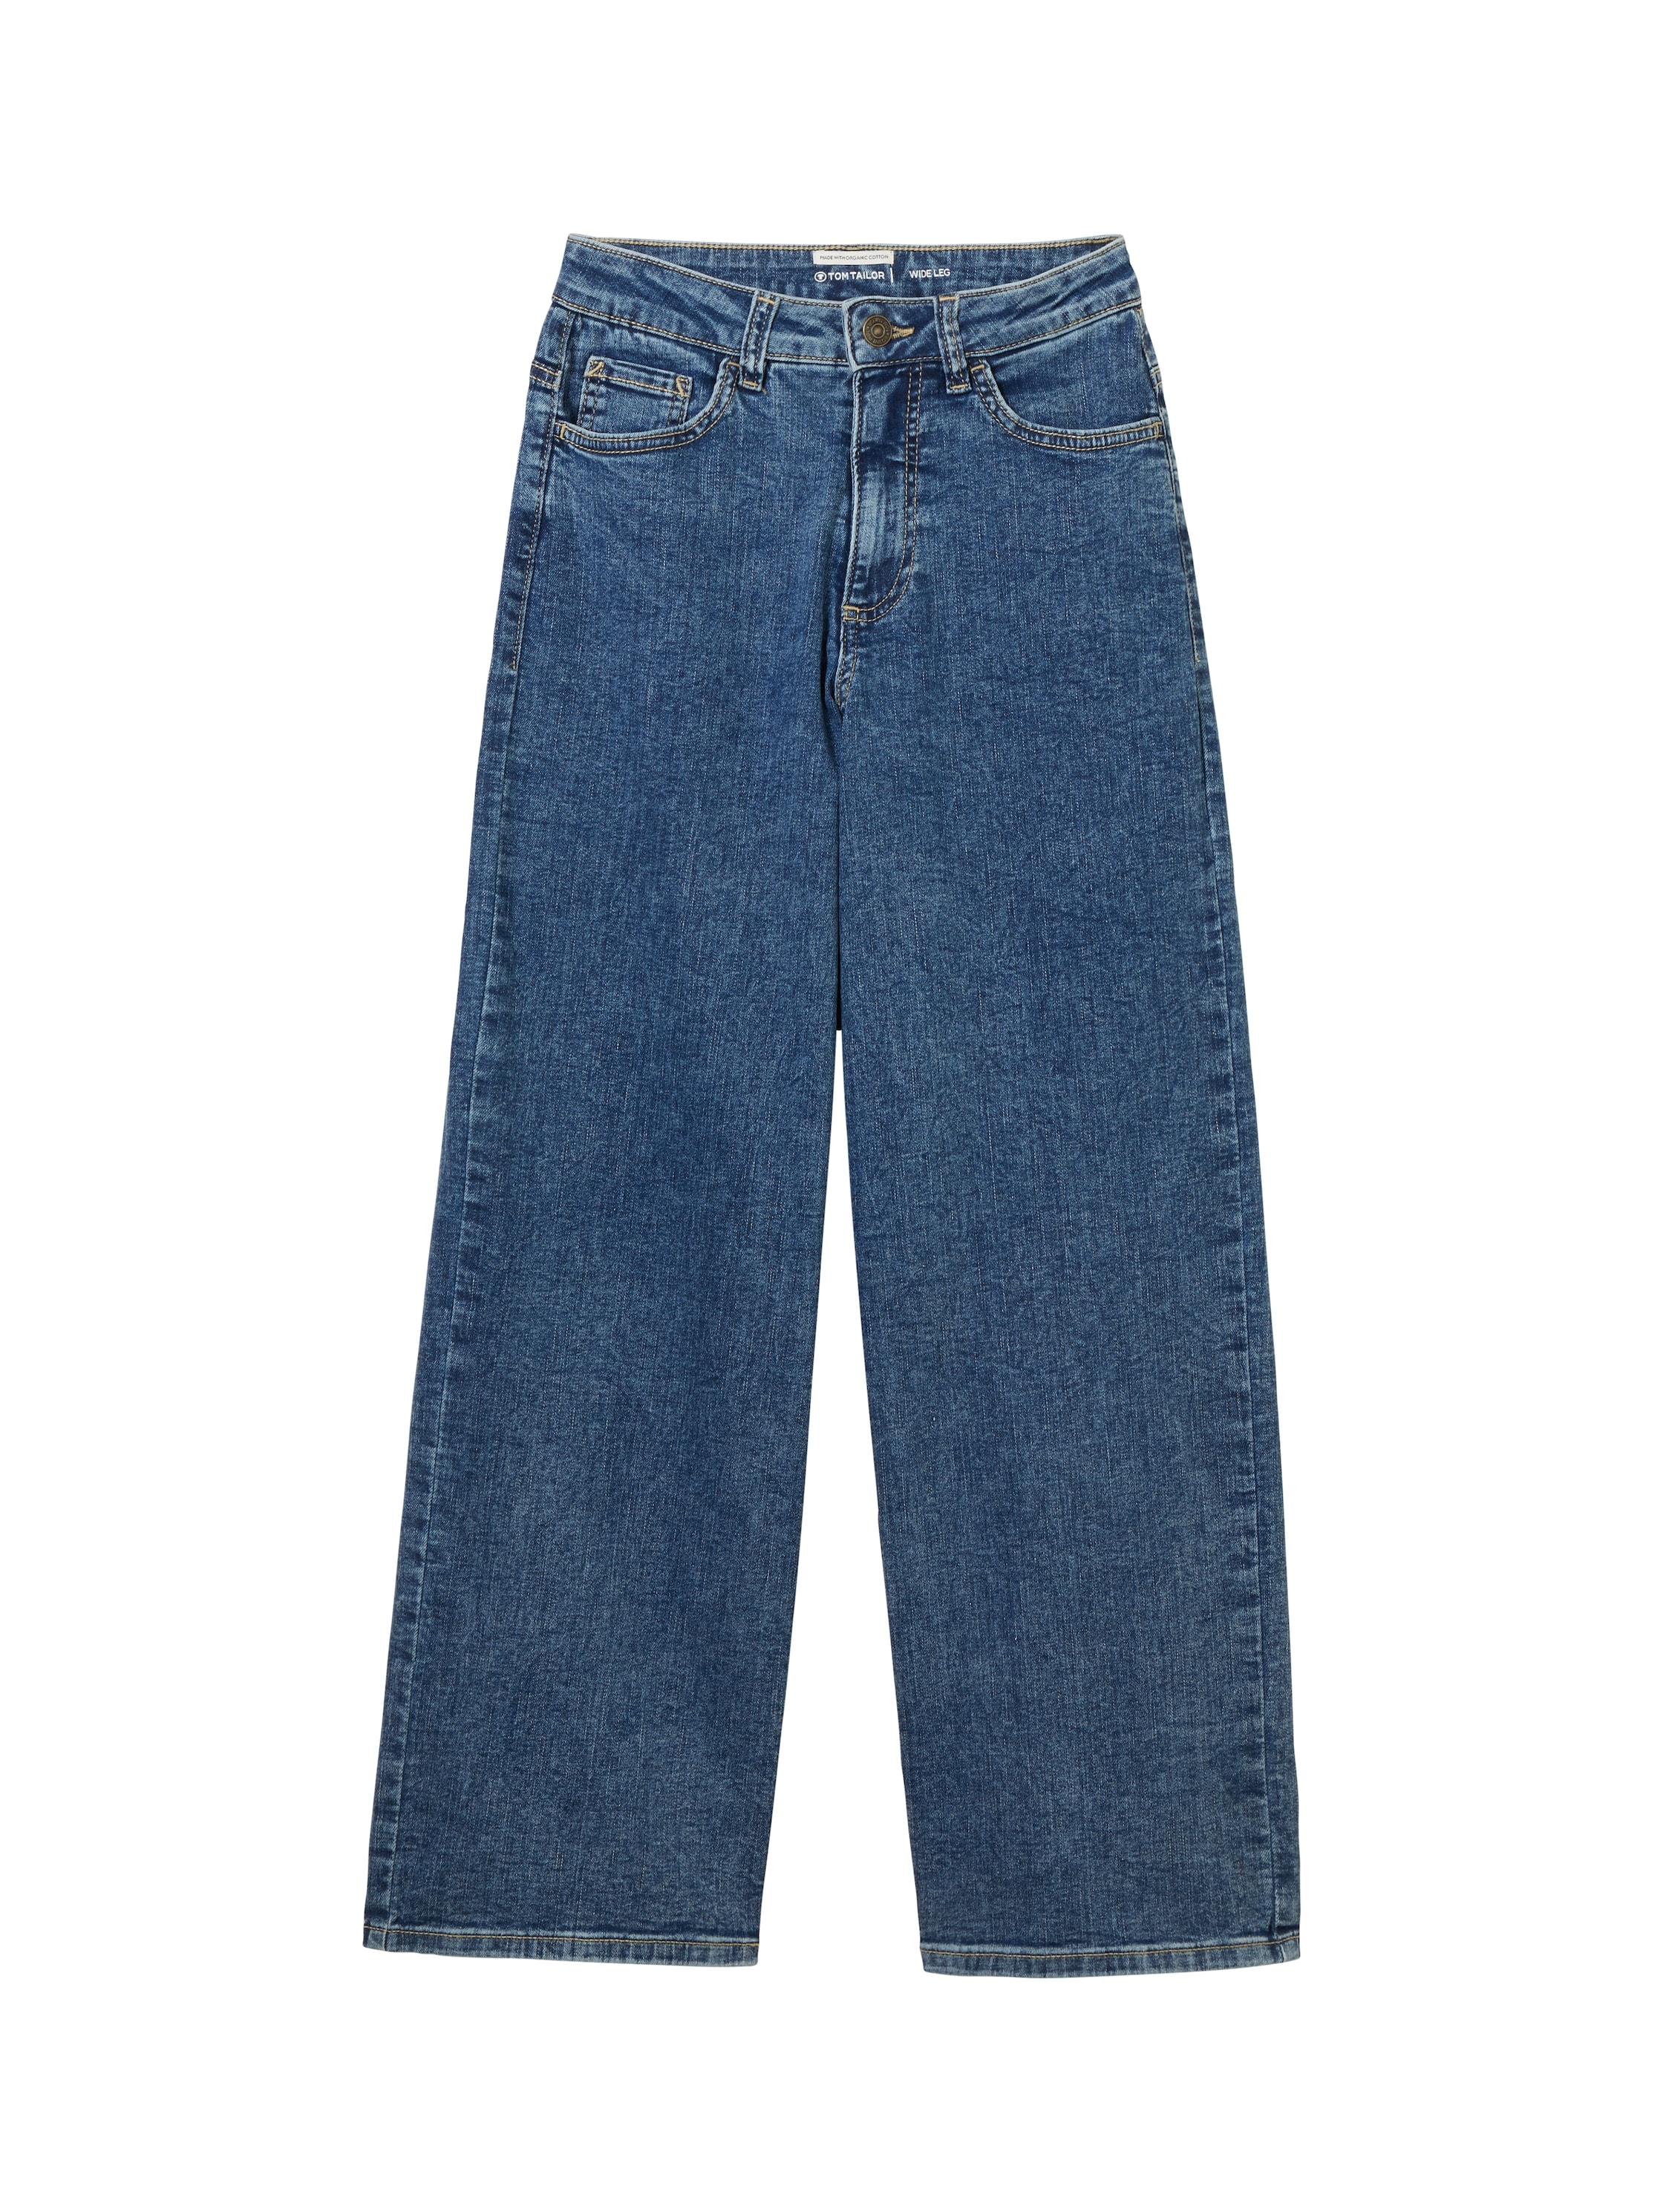 Weite Jeans, im klassischen 5-Pocket-Style